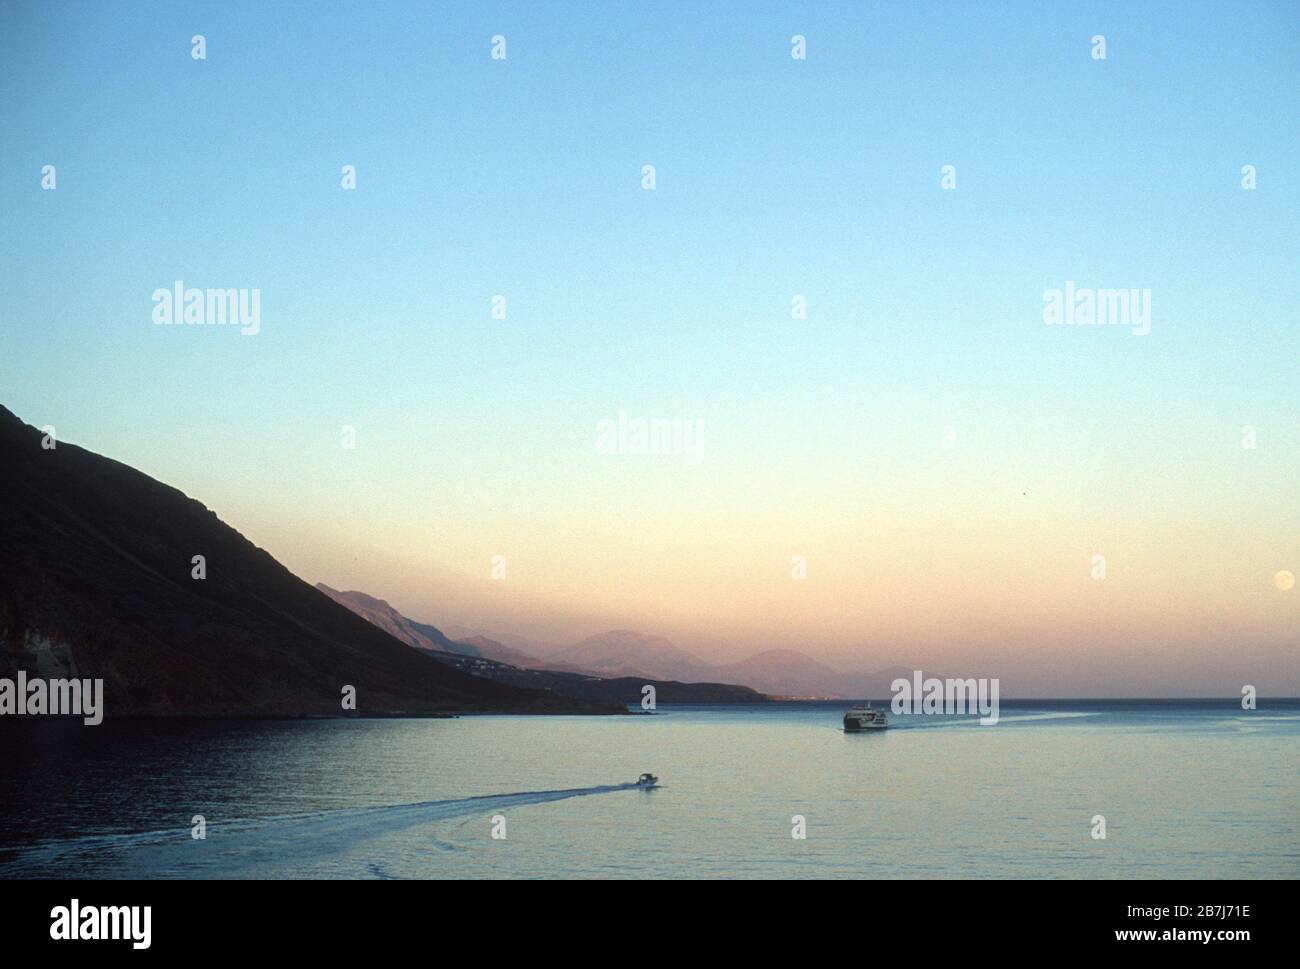 Il traghetto Daskalogiannis su un tranquillo Mar Libico che si avvicina al villaggio di Loutro, Creta, Grecia al tramonto, con la luna piena nel cielo e le montagne dietro. Un motoscafo si dirige in direzione opposta, verso Chora Sfakia, visto sullo sfondo. Foto Stock